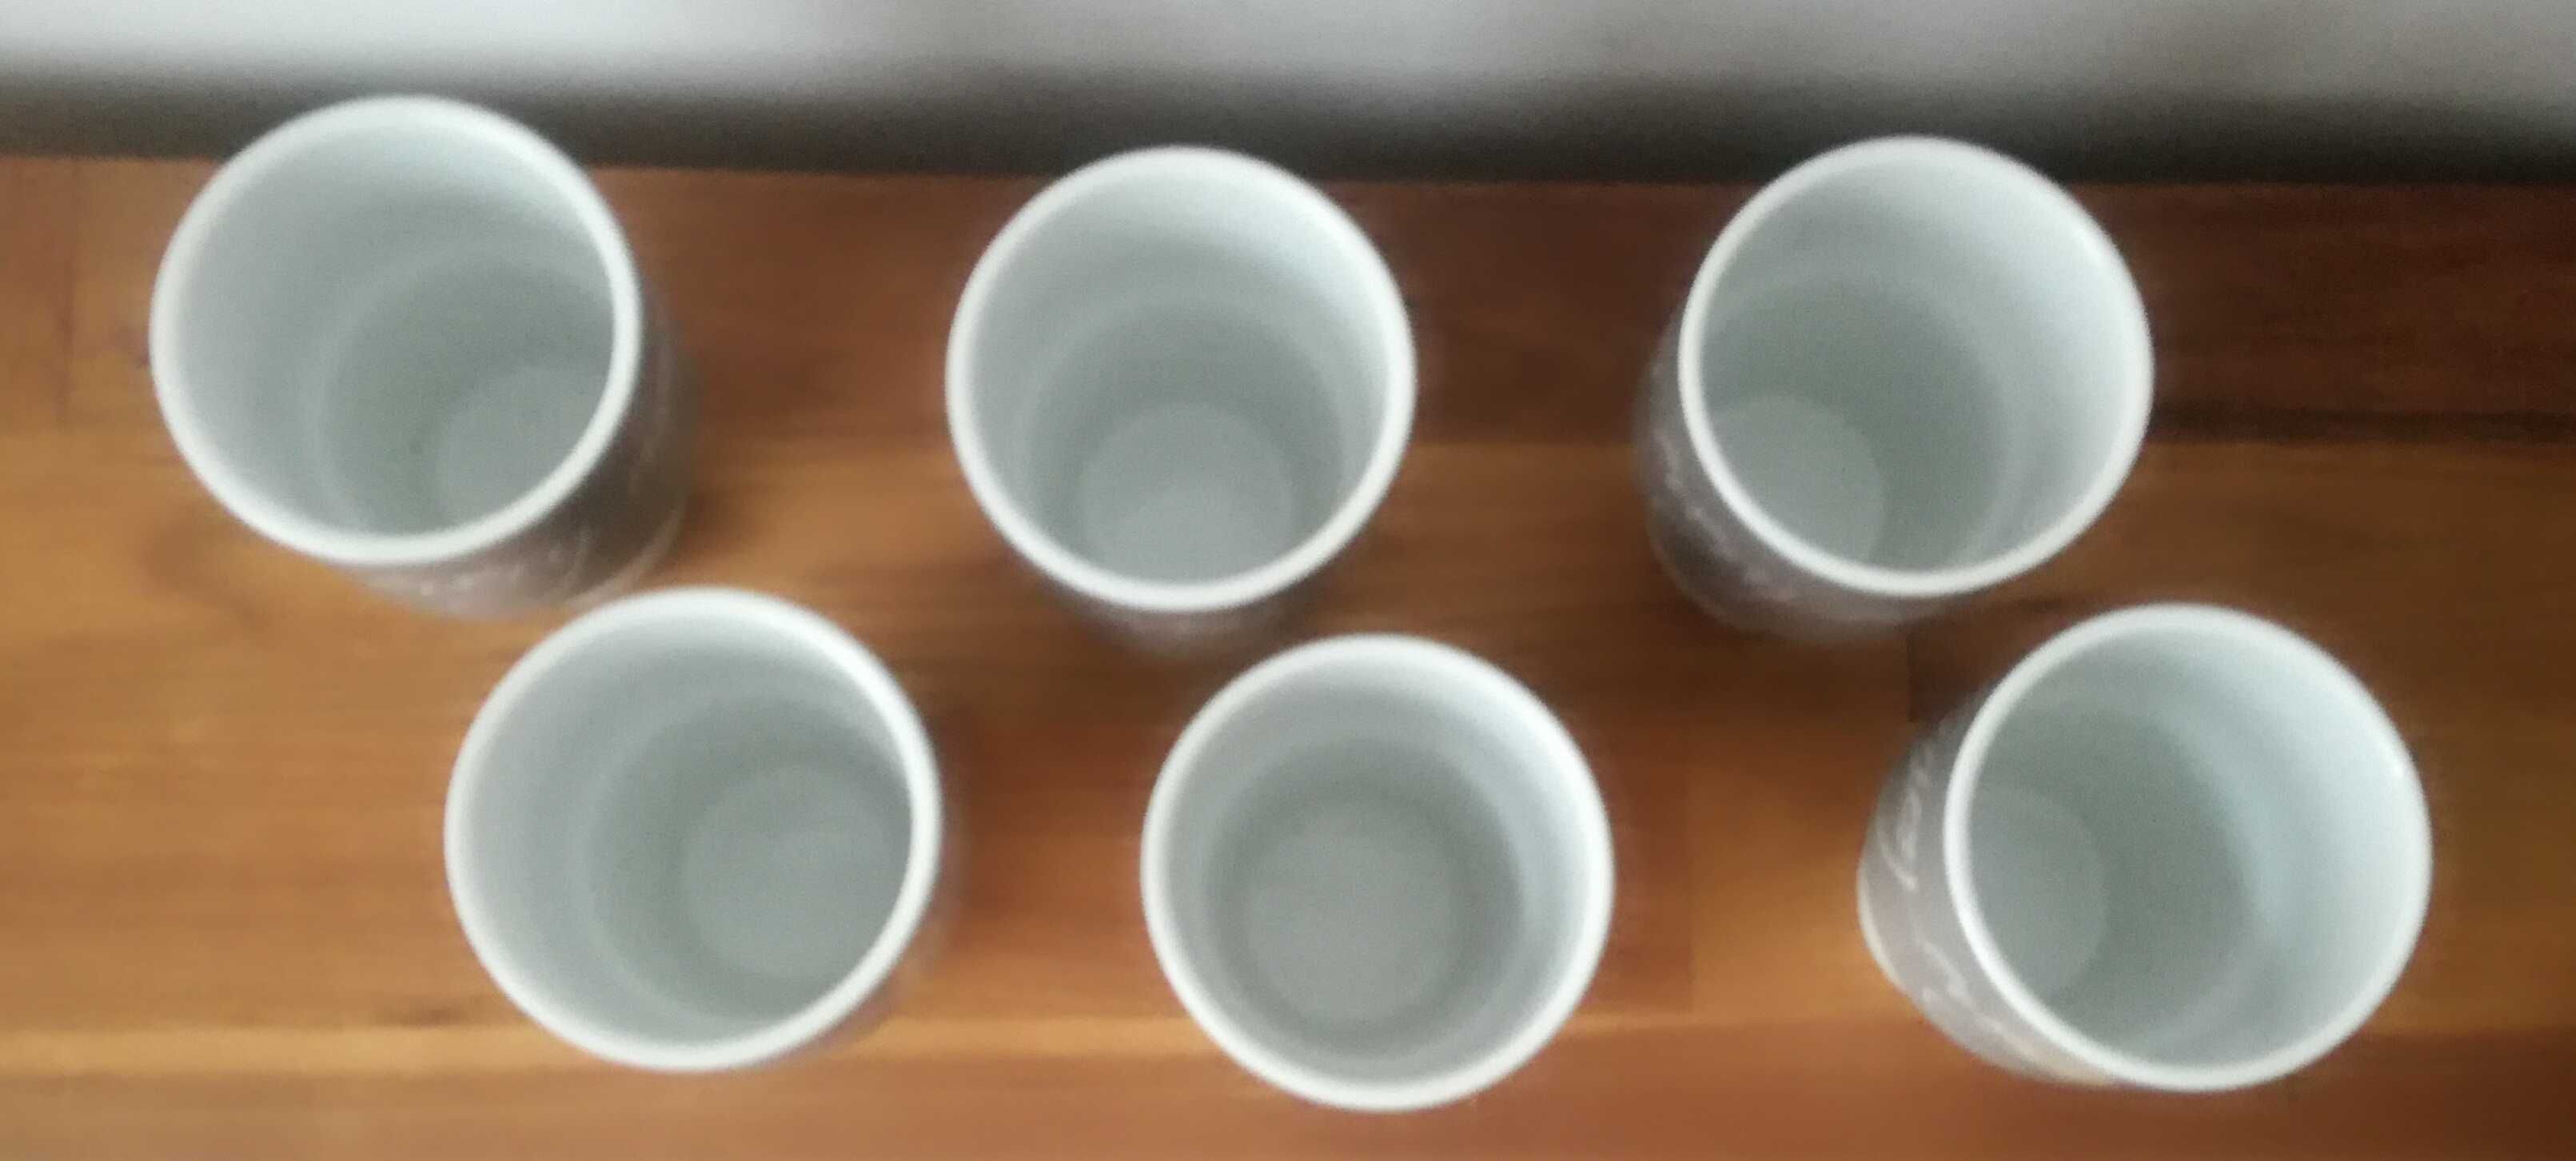 6 x Retro Kubki porcelanowe białe szare do kawy herbaty